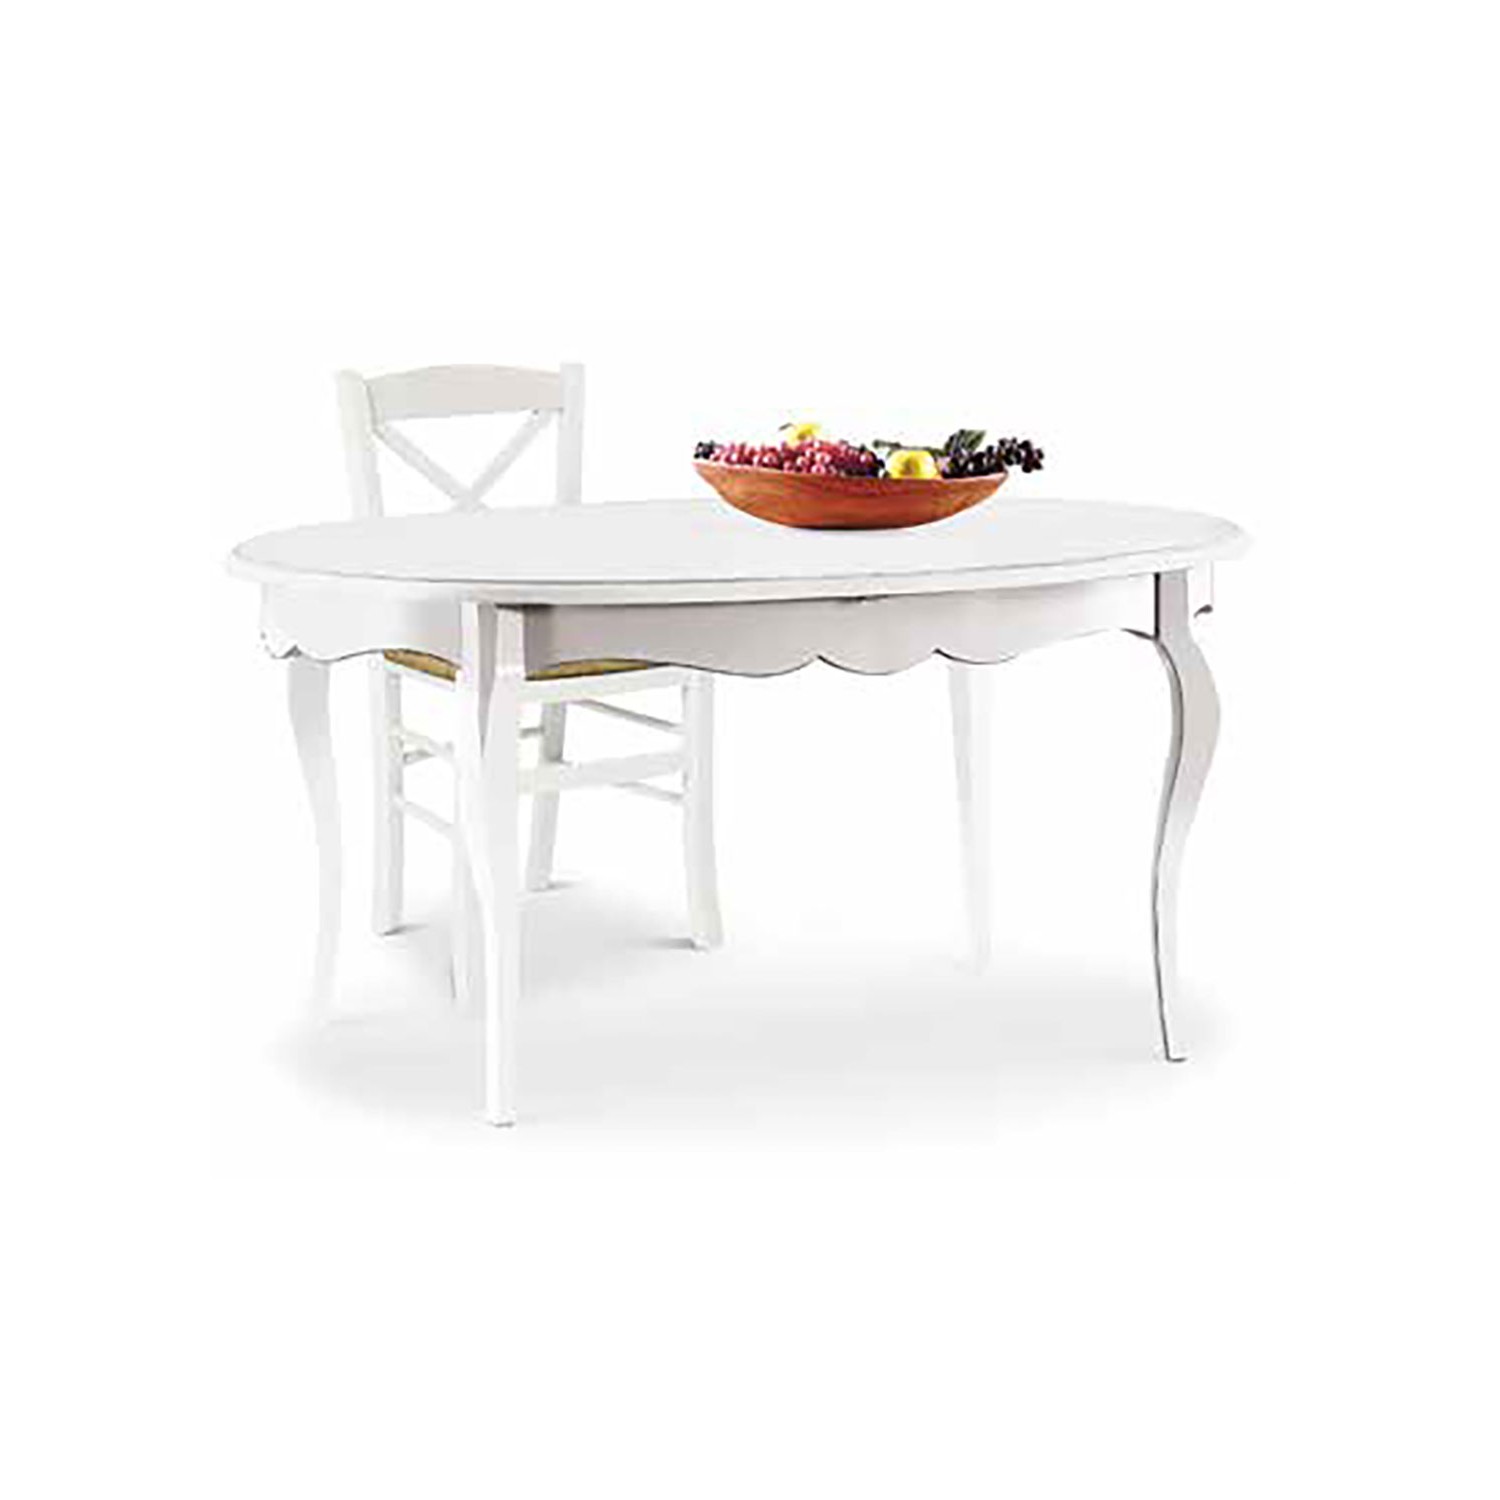 Sedia impagliata e tavolo allungabile ovale